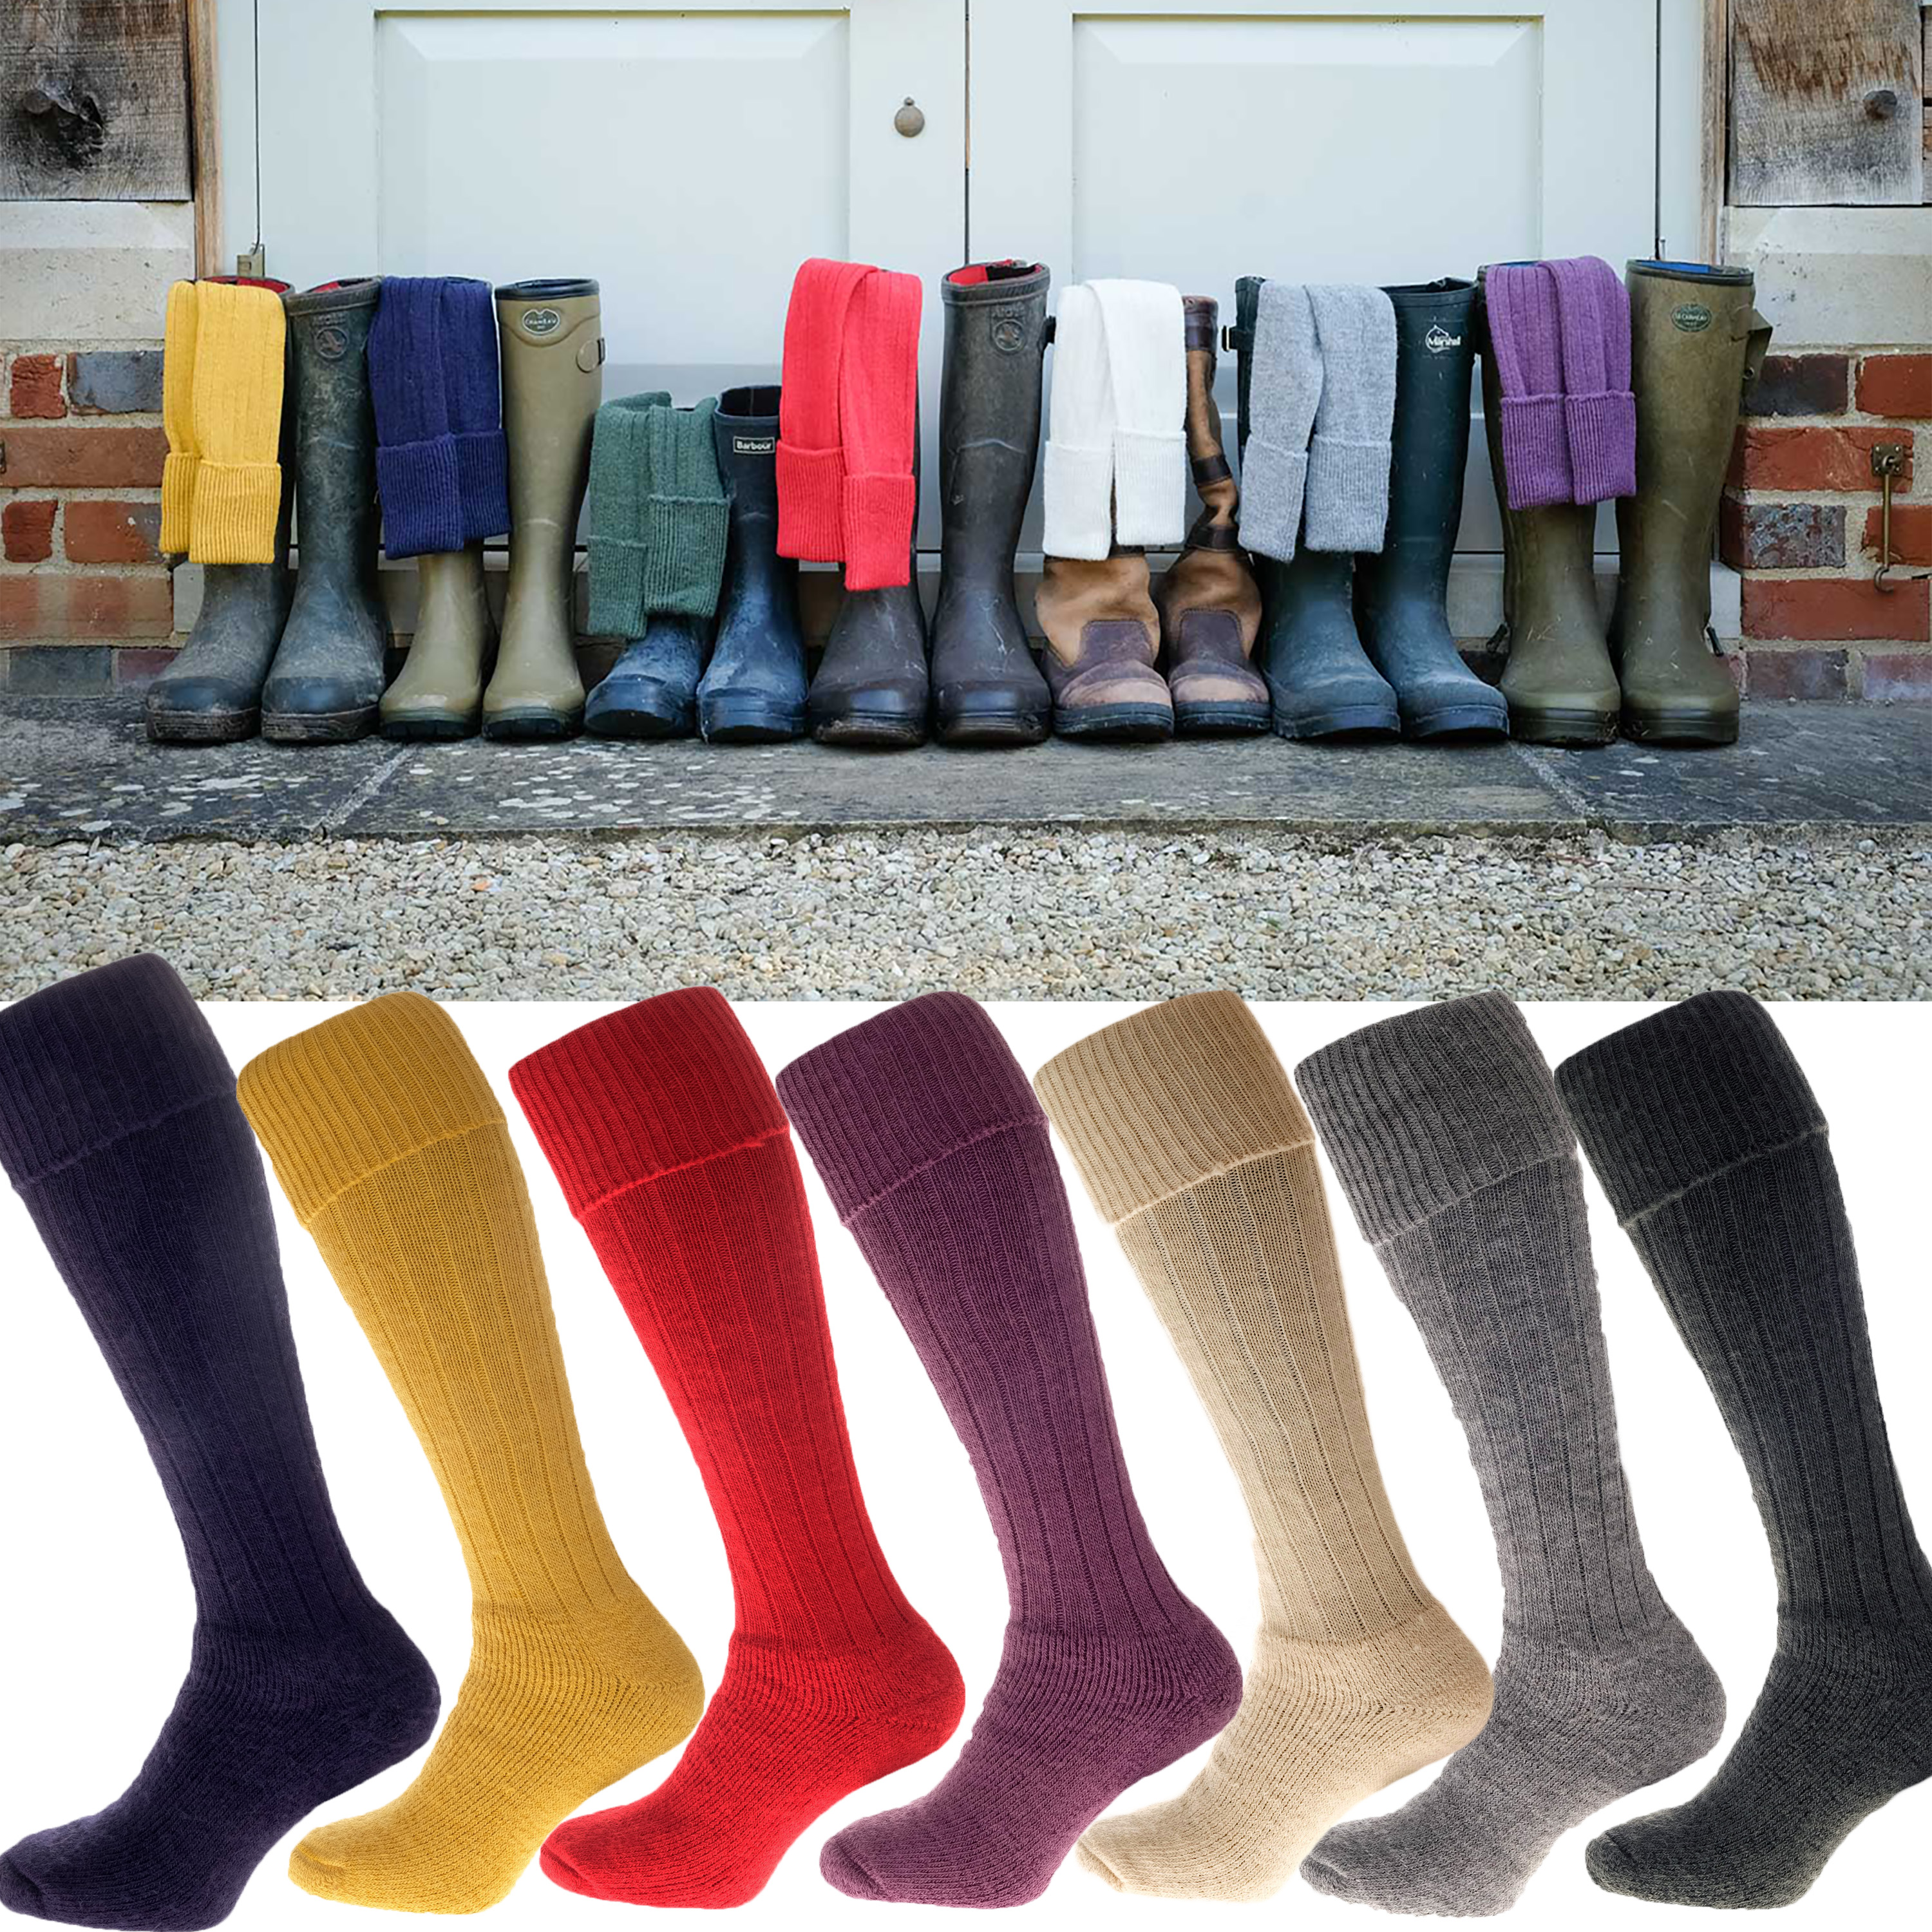 Alpaca Country Socks Warm 75% Alpaca Wool, Long thick Wellie shooting socks